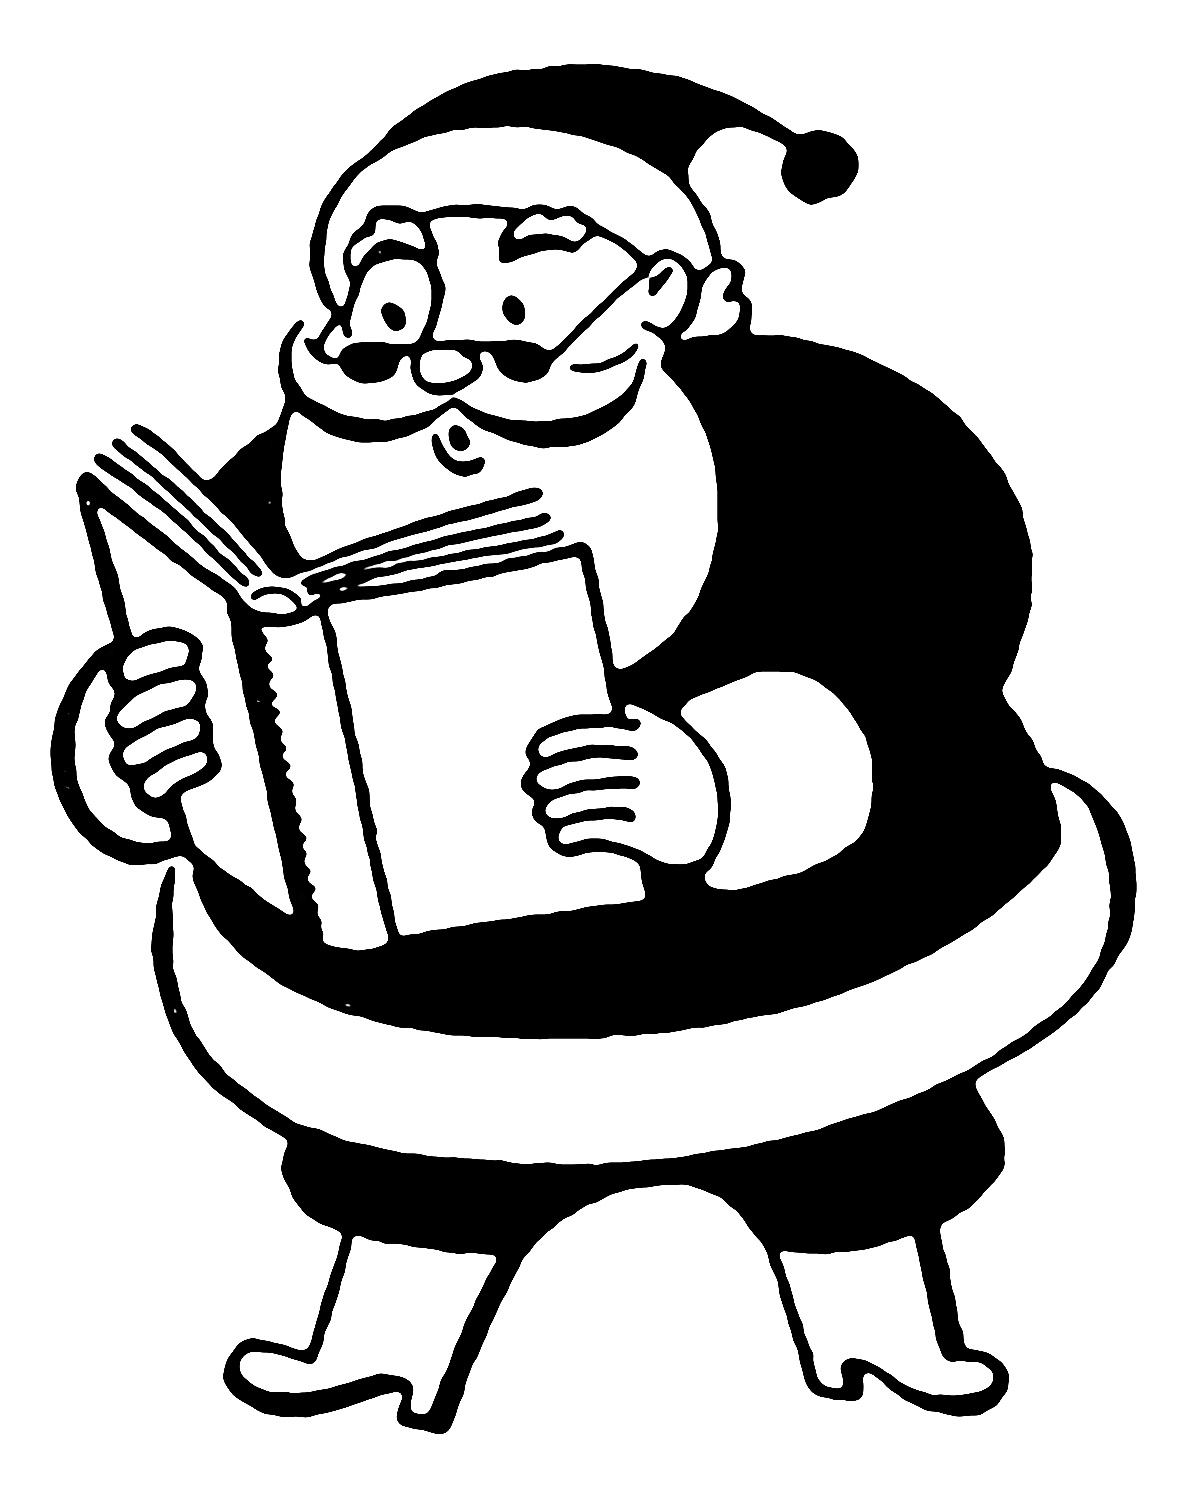 Retro Clip Art - More Funny Santas - The Graphics Fairy